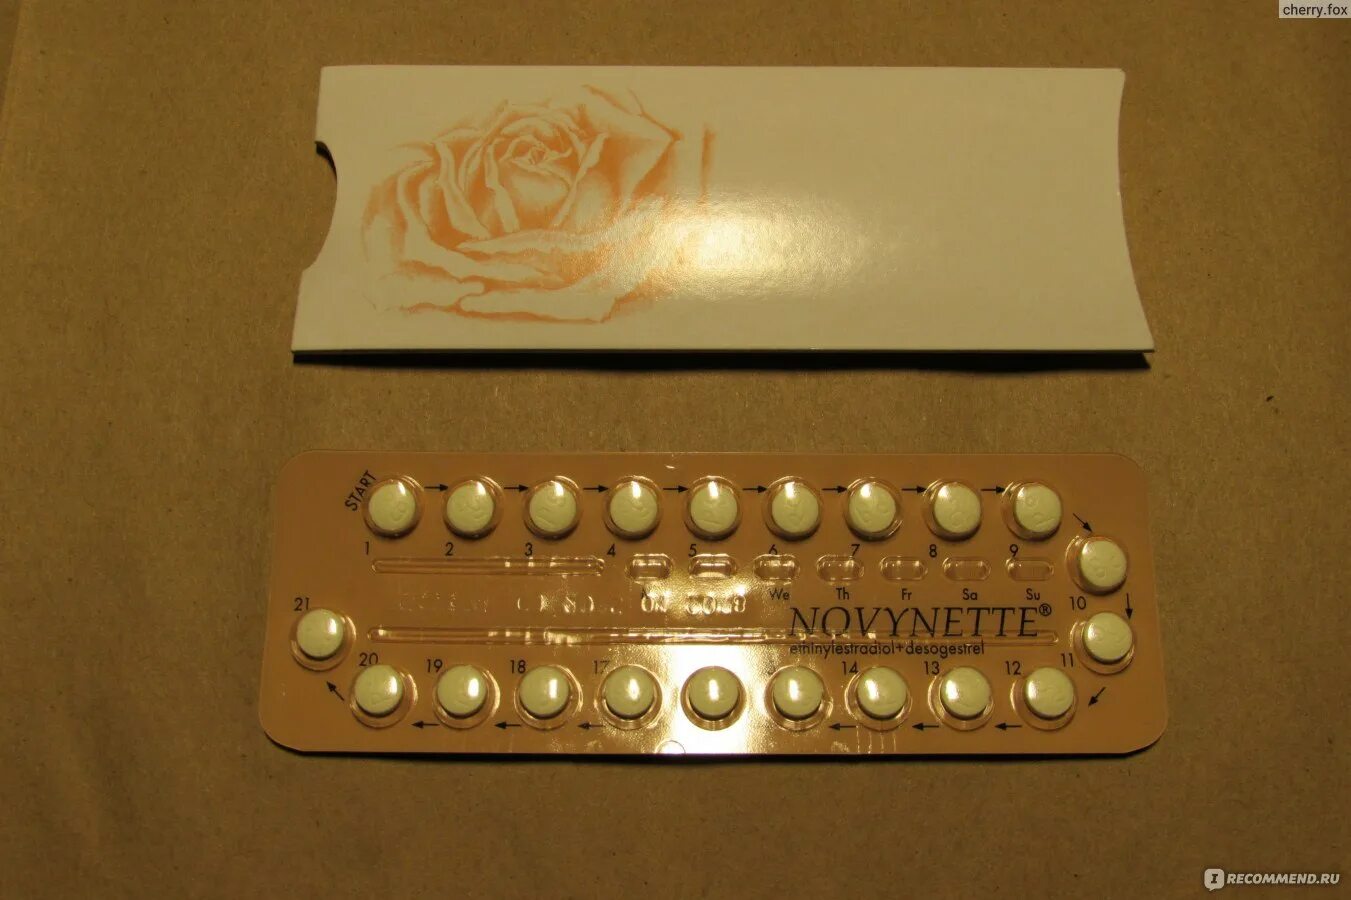 Противозачаточные таблетки для женщин 30 рожавшим. Новинет 30. Противозачаточные таблетки. Гормональные противозачаточные таблетки. Гормональные таблетки для женщин противозачаточные.